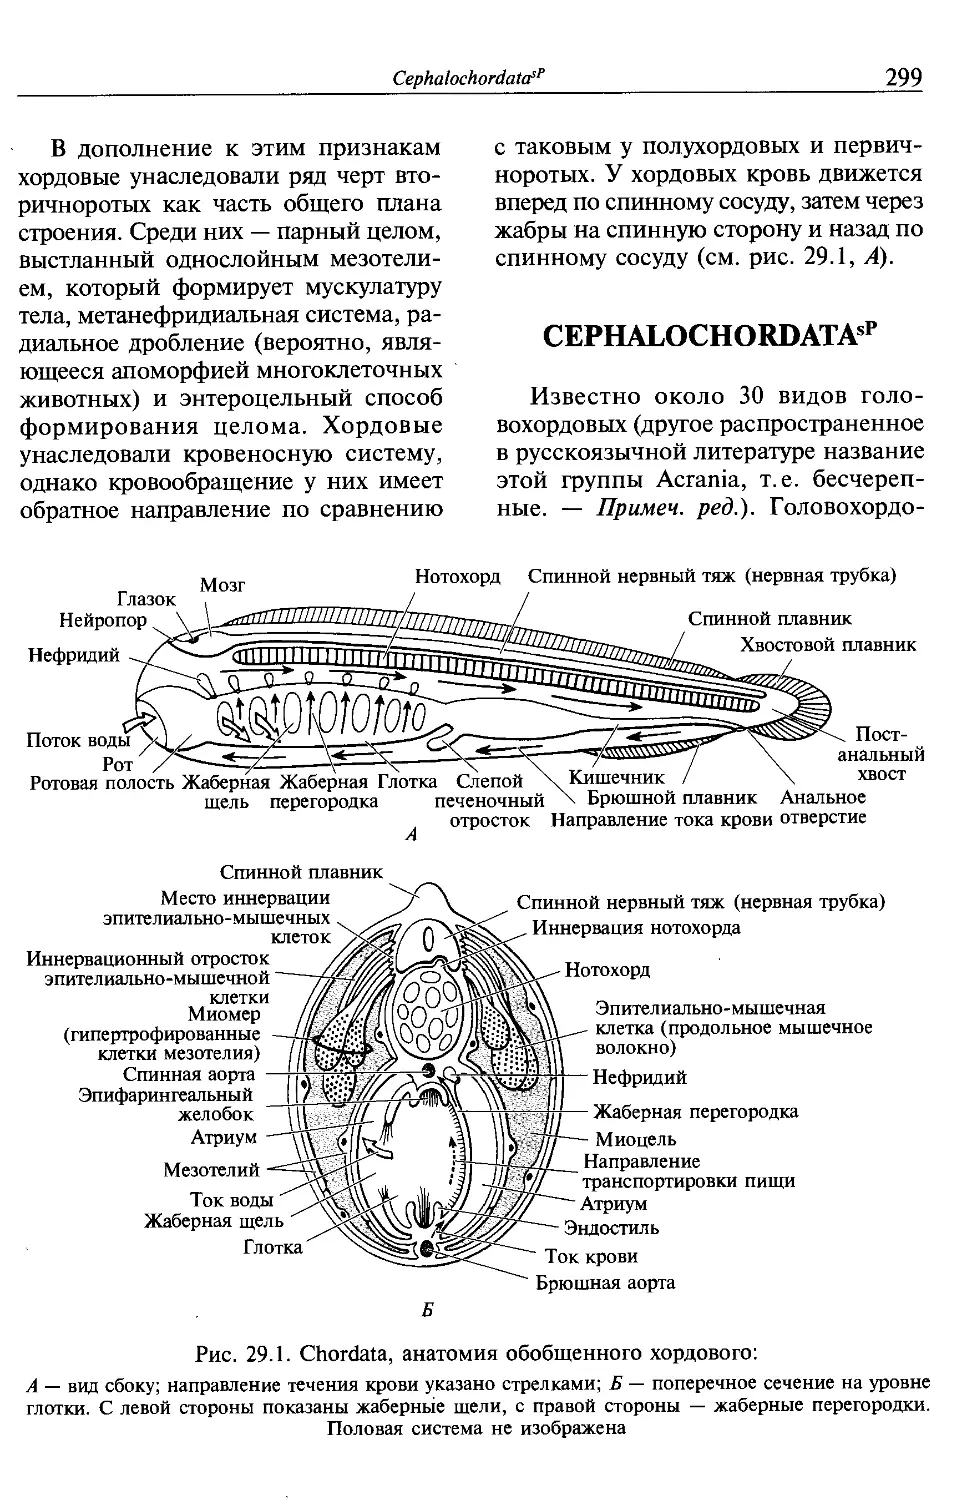 Cephalochordatas